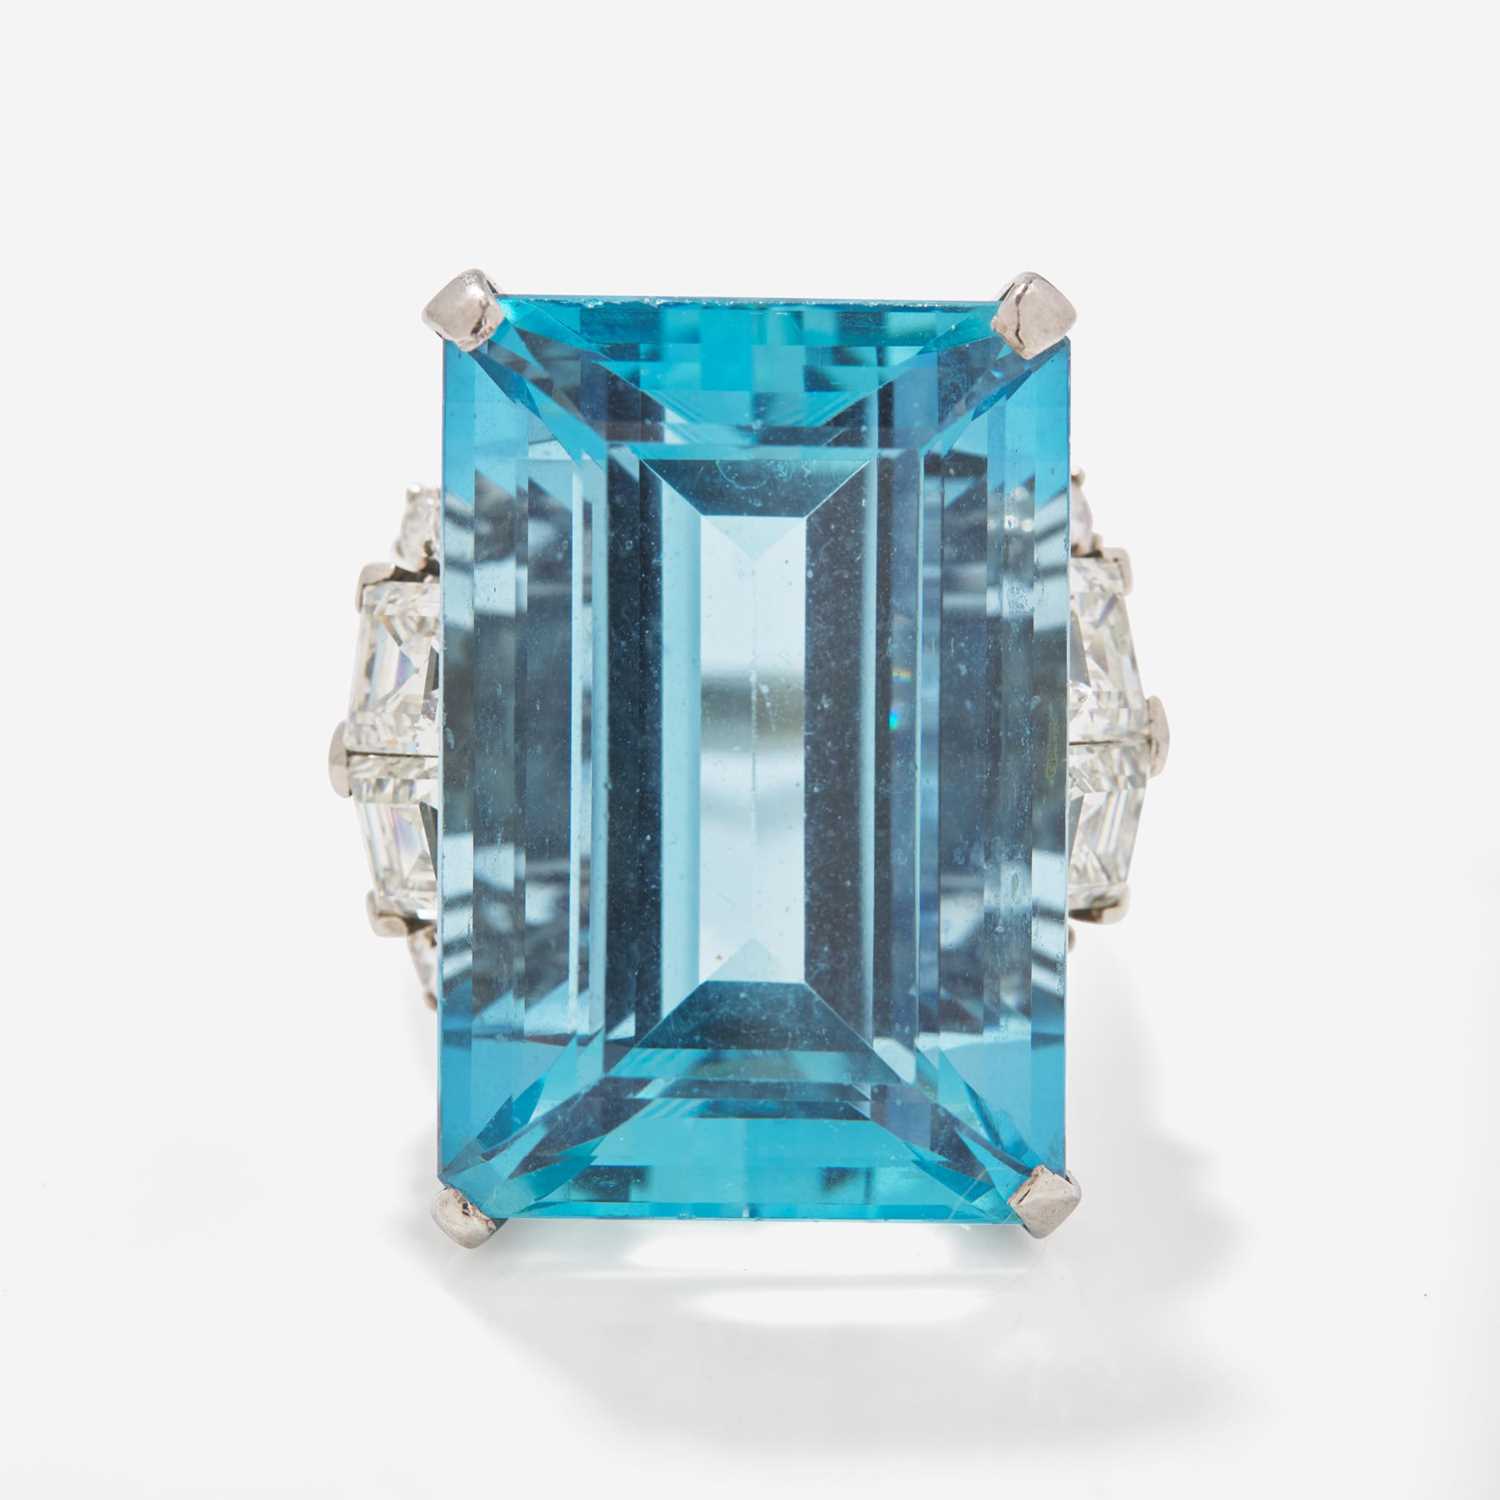 Lot 3 - A Ladies Platinum and Aquamarine Diamond Ring